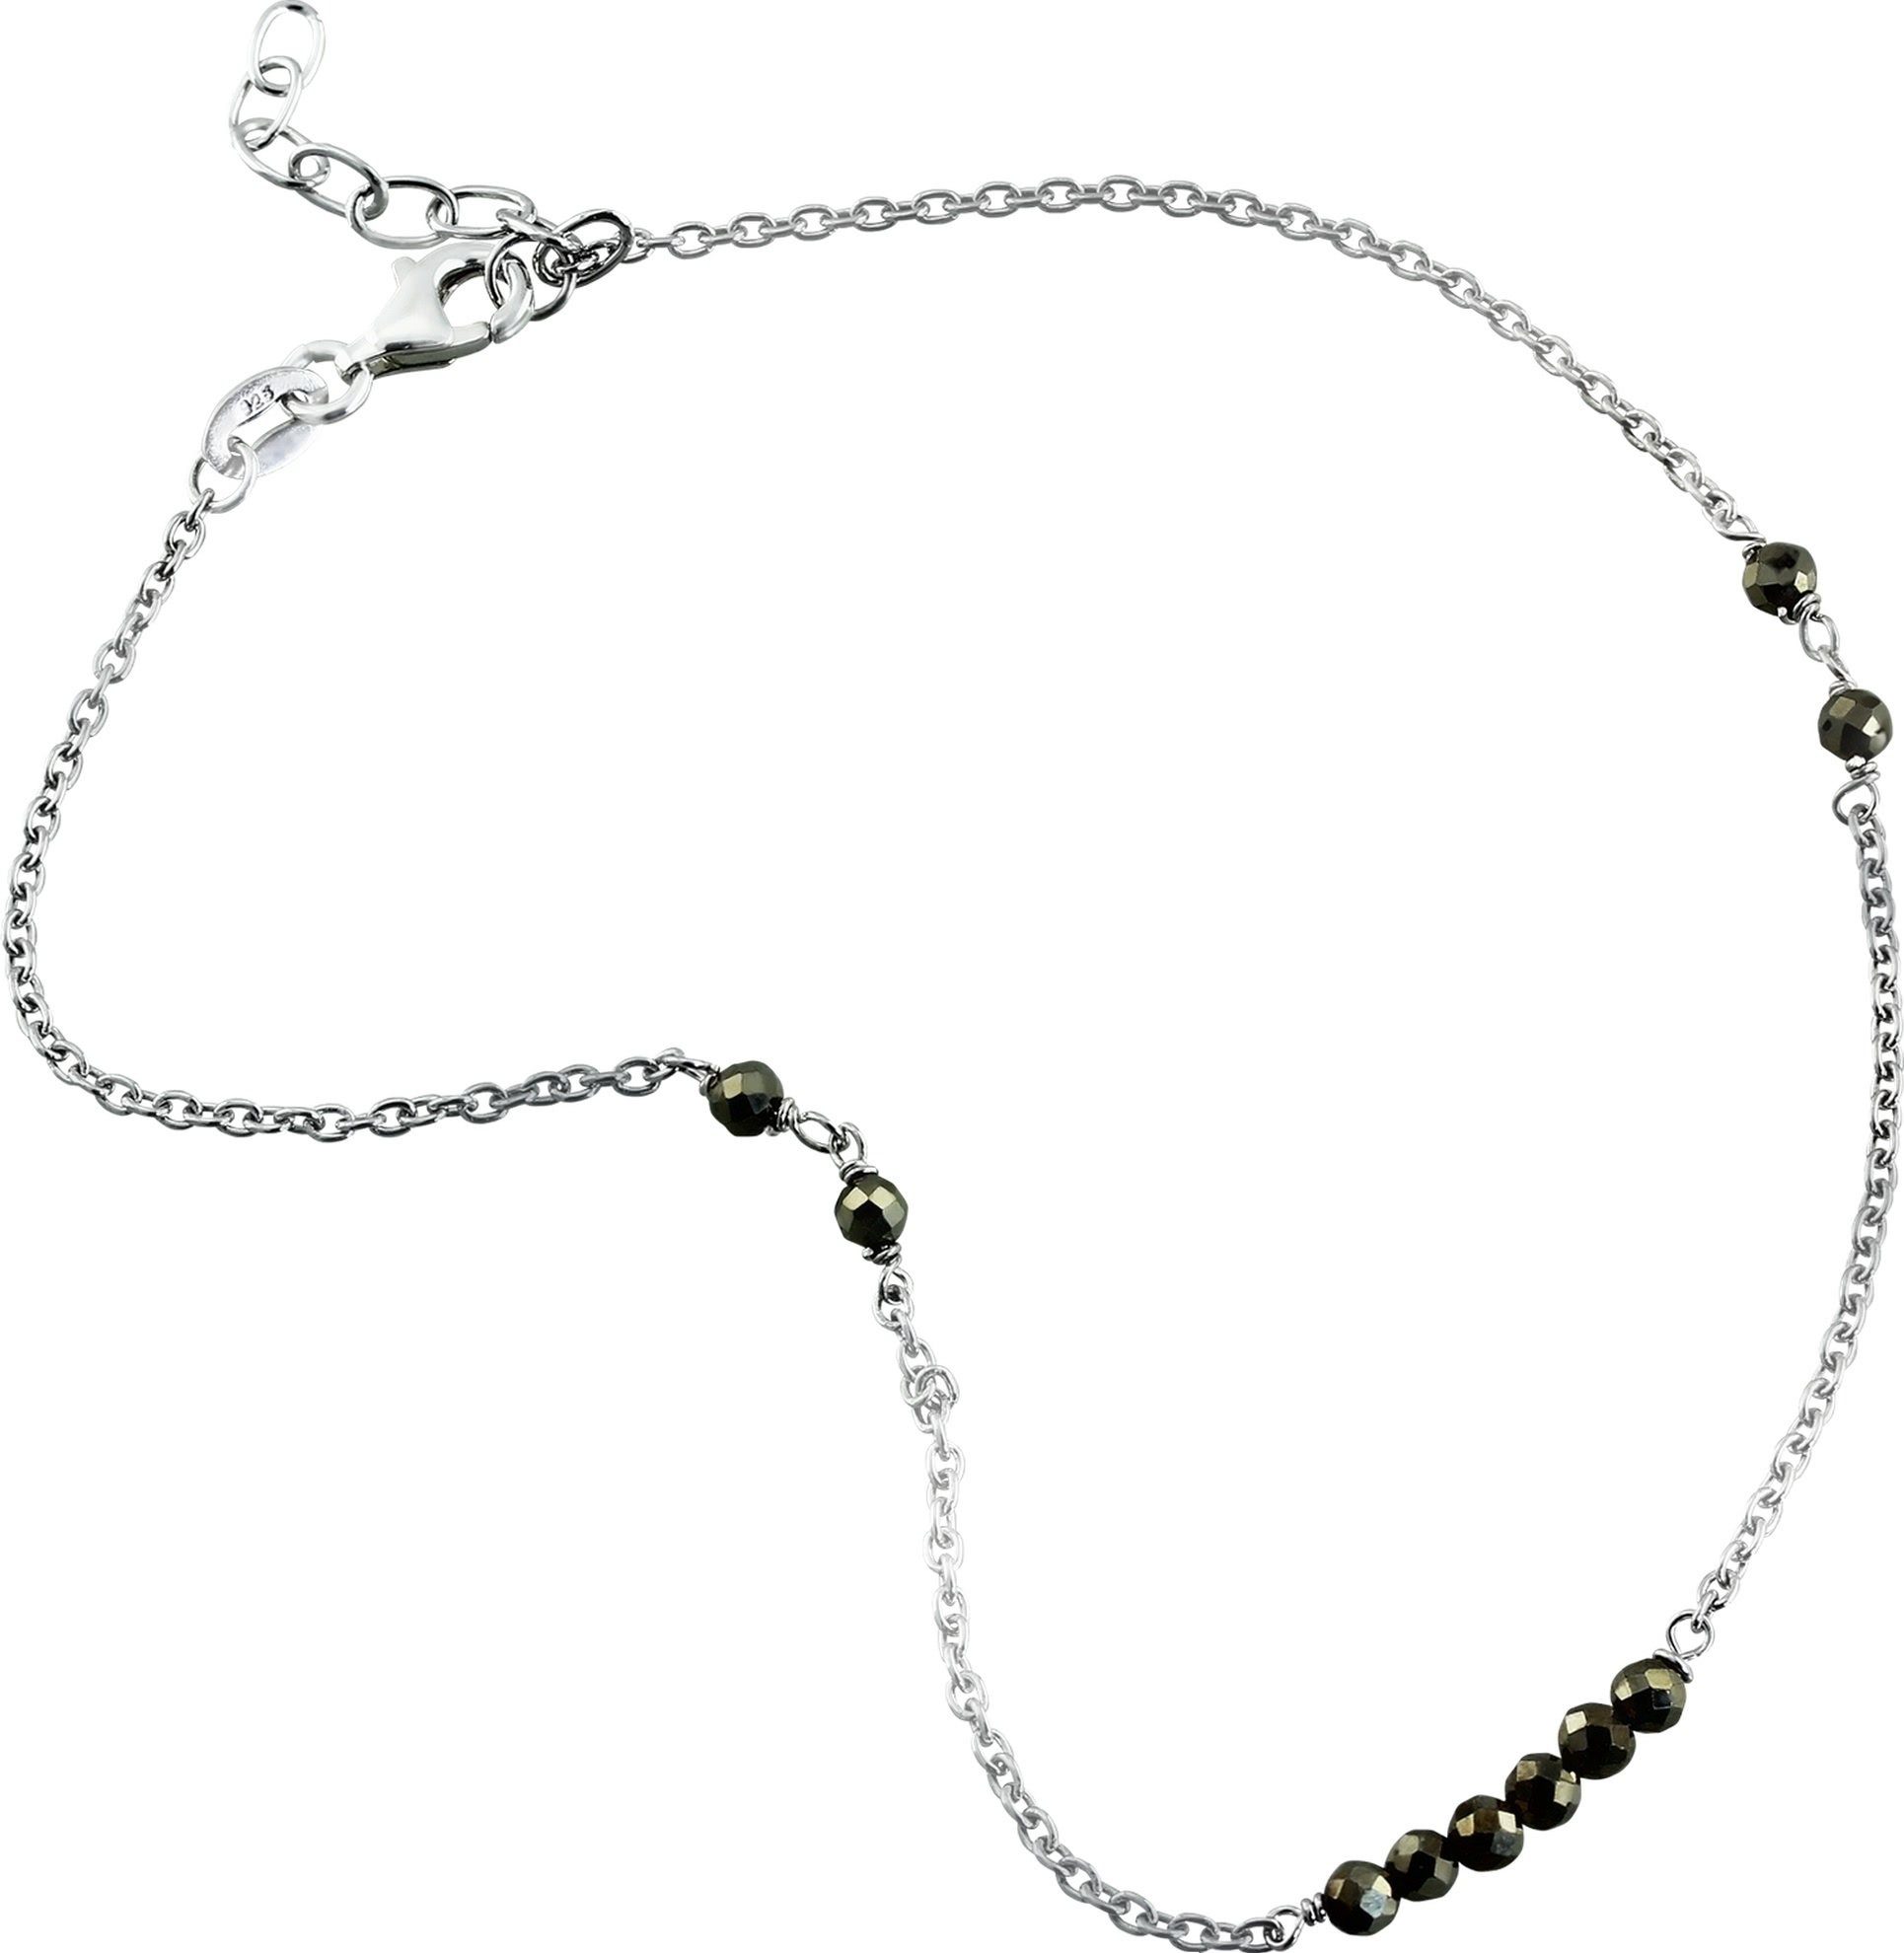 SilberDream Fußkette mit Anhänger SilberDream Damen Fußkette Perlen grau, Damen Fußkette Pyrit-Perlen aus 925 Sterling Silber, Farbe: grau, silb